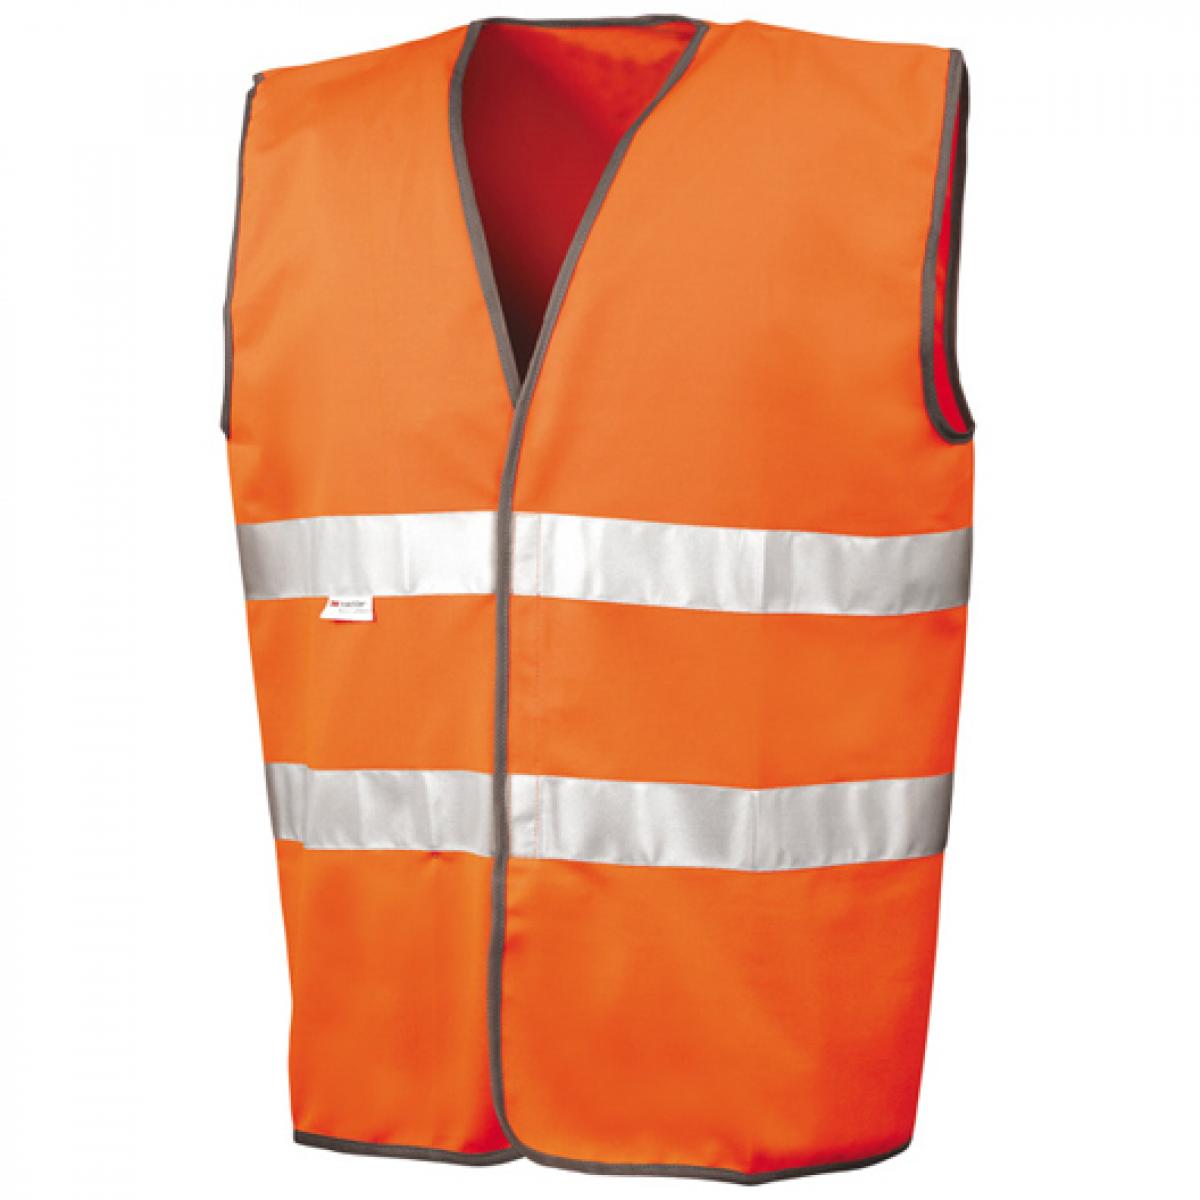 Hersteller: Result Herstellernummer: R211X Artikelbezeichnung: Herren Motorist Safety Vest EN471 /  nach ISOEN20471:2013 Farbe: Fluorescent Orange